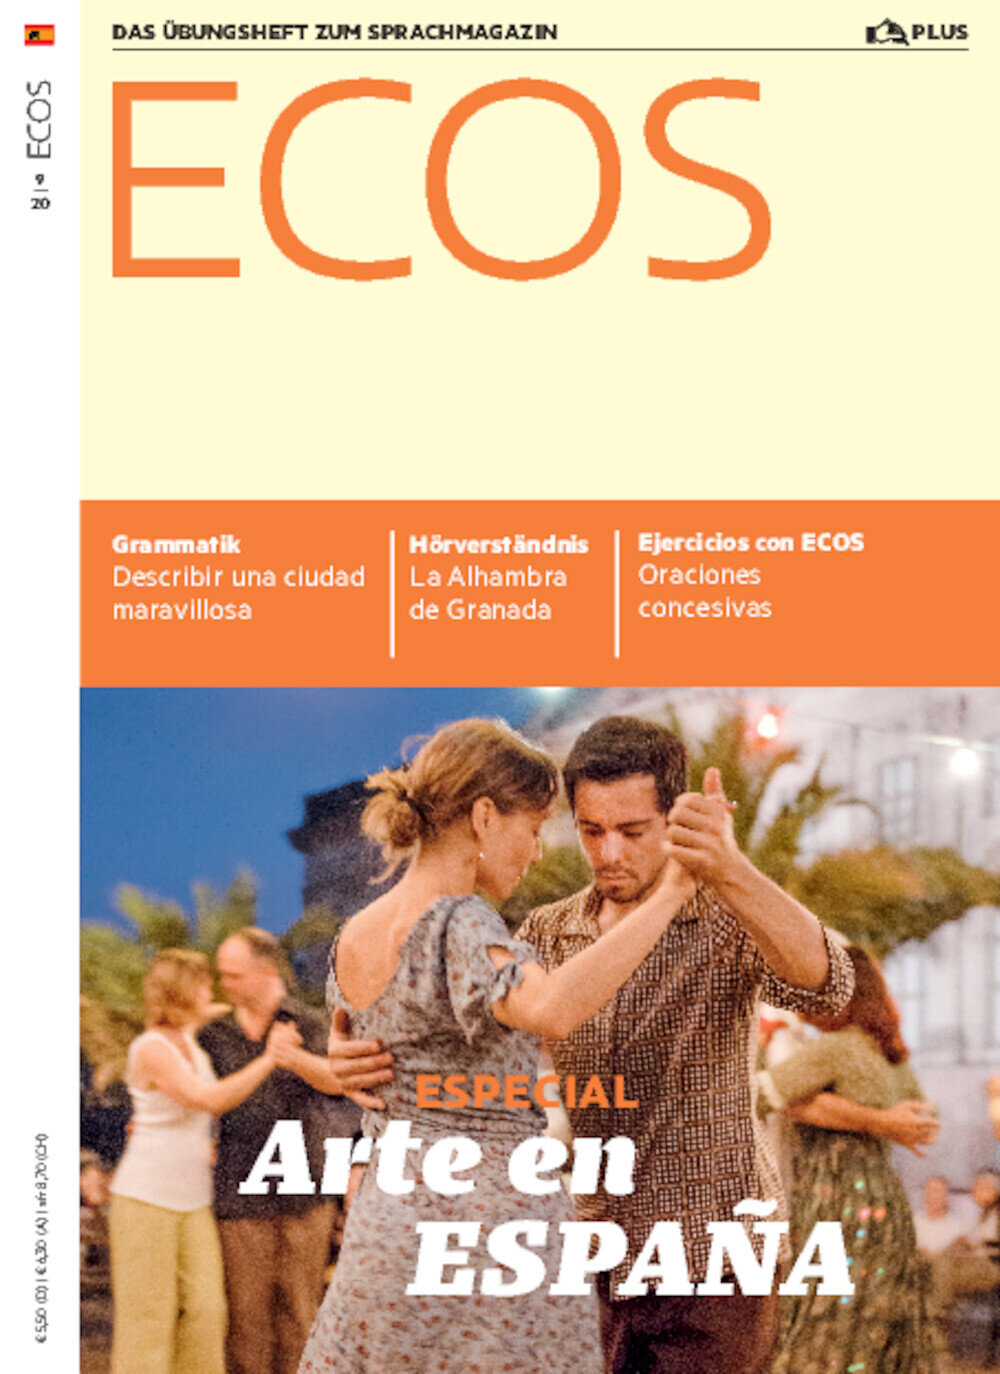 Ecos PLUS ePaper 09/2020